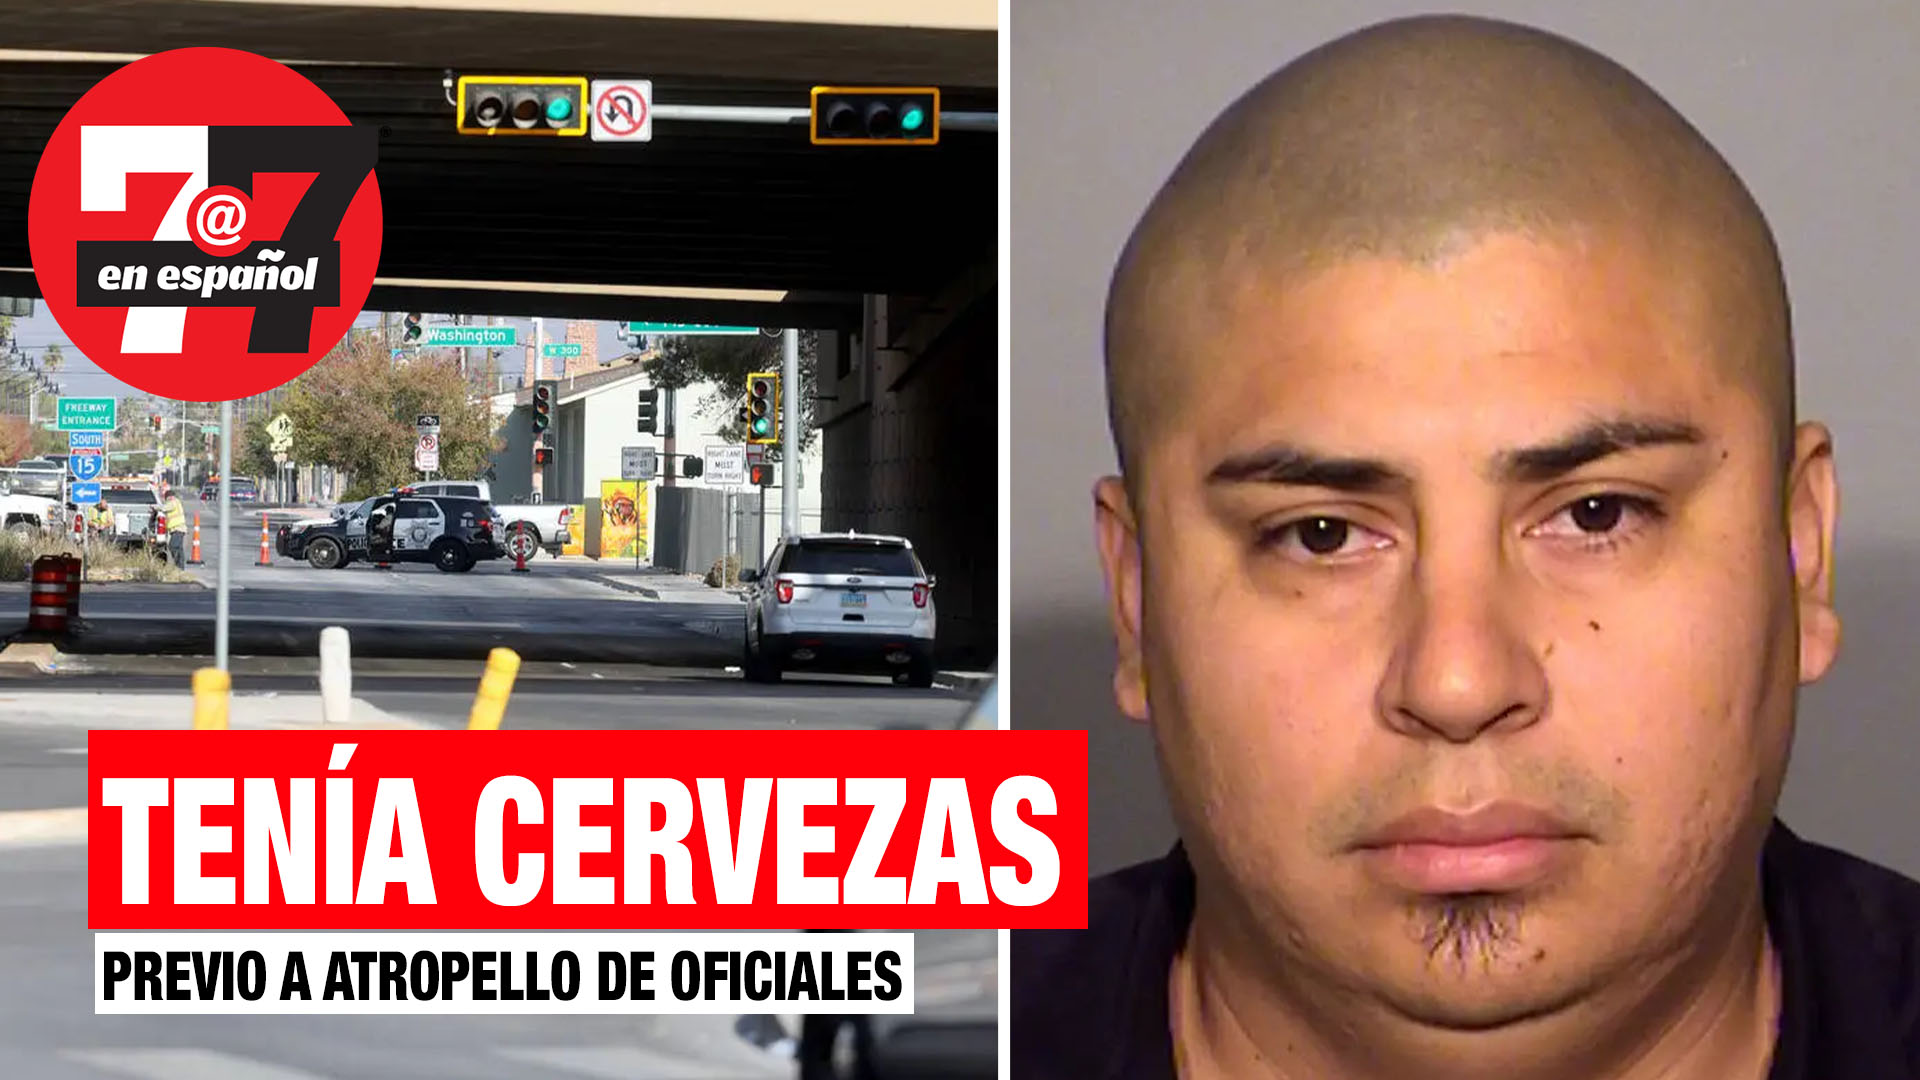 Noticias de Las Vegas | Hispano tenía cervezas en su coche antes de atropello de oficiales